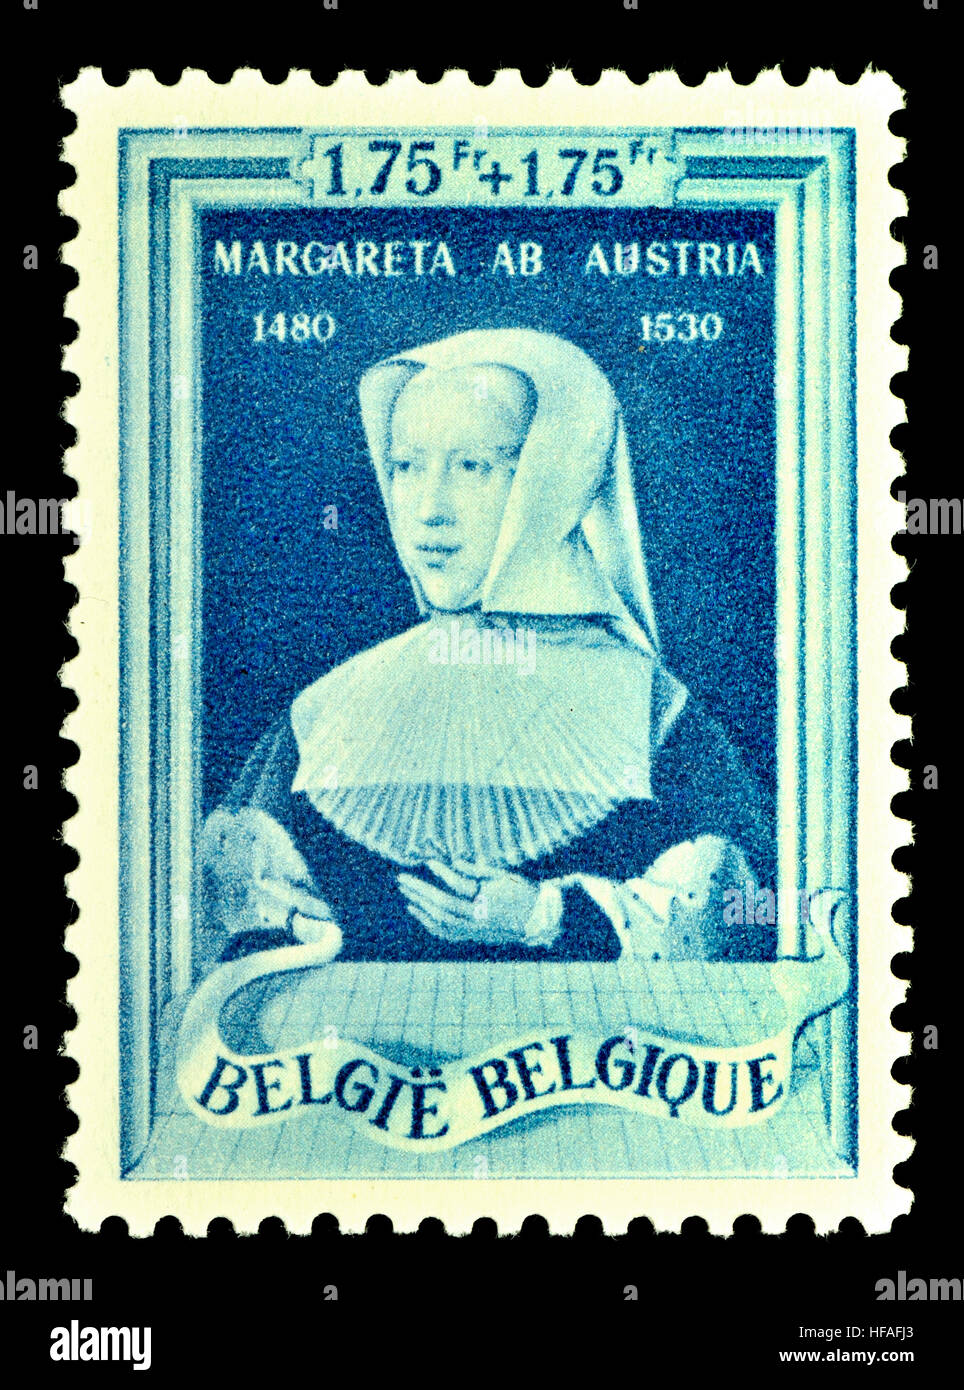 Timbre-poste belge (1941) : l'Archiduchesse Marguerite d'Autriche (1480 - 1530) La Princesse des Asturies et la duchesse de Savoie Banque D'Images